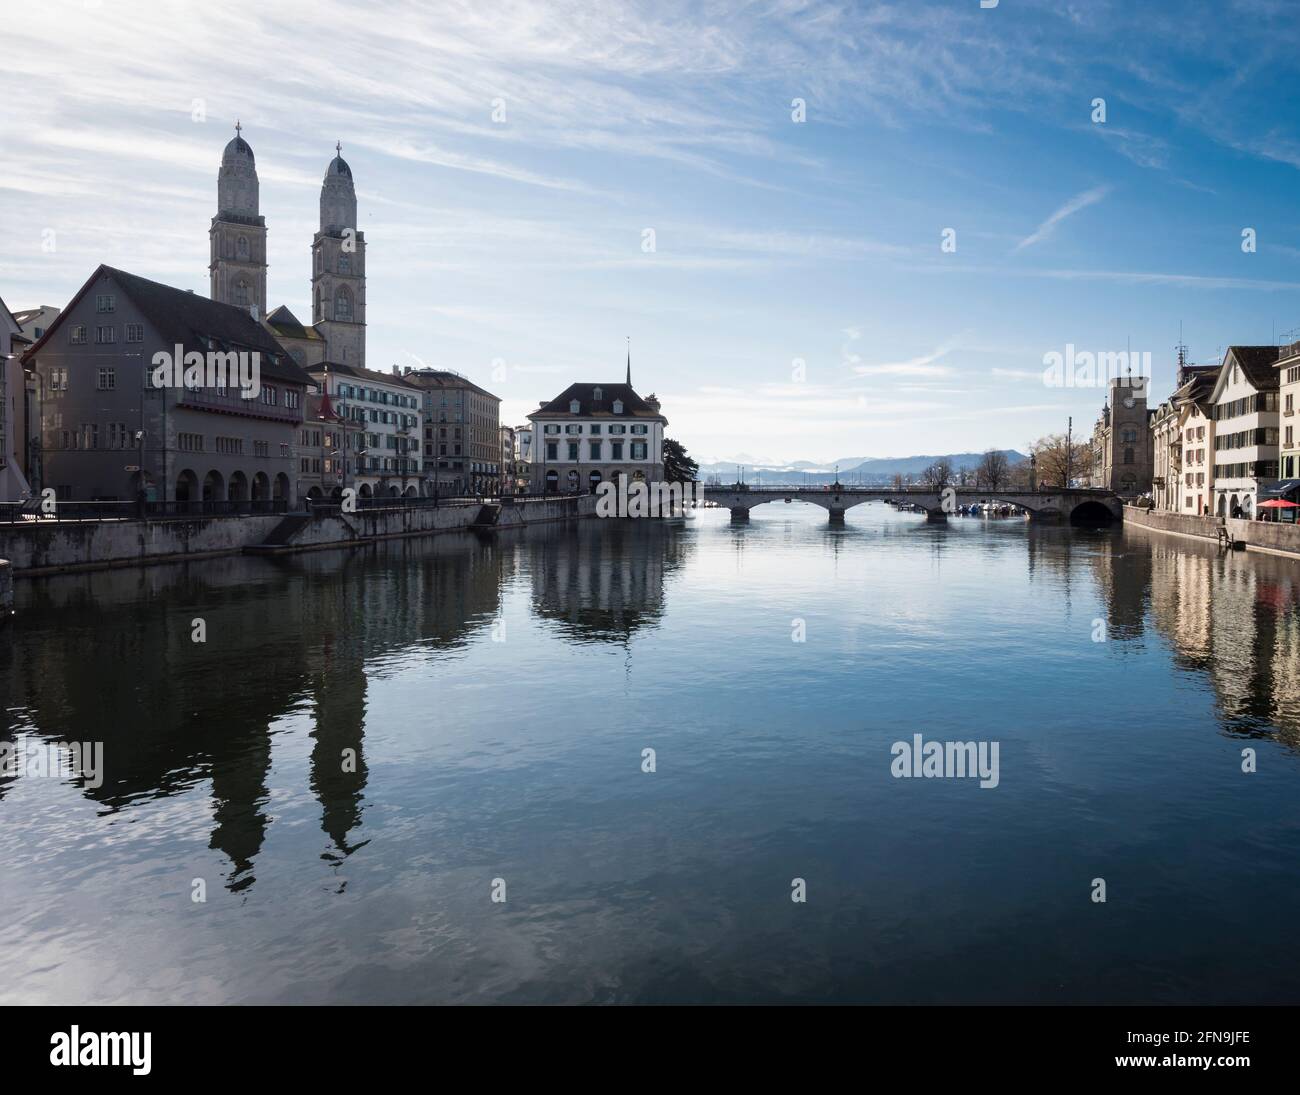 Front de mer de la rivière Limmat dans la vieille ville de Zurich, Suisse. Vue vers le sud en direction du lac et de la cathédrale de Grossmunster. Banque D'Images